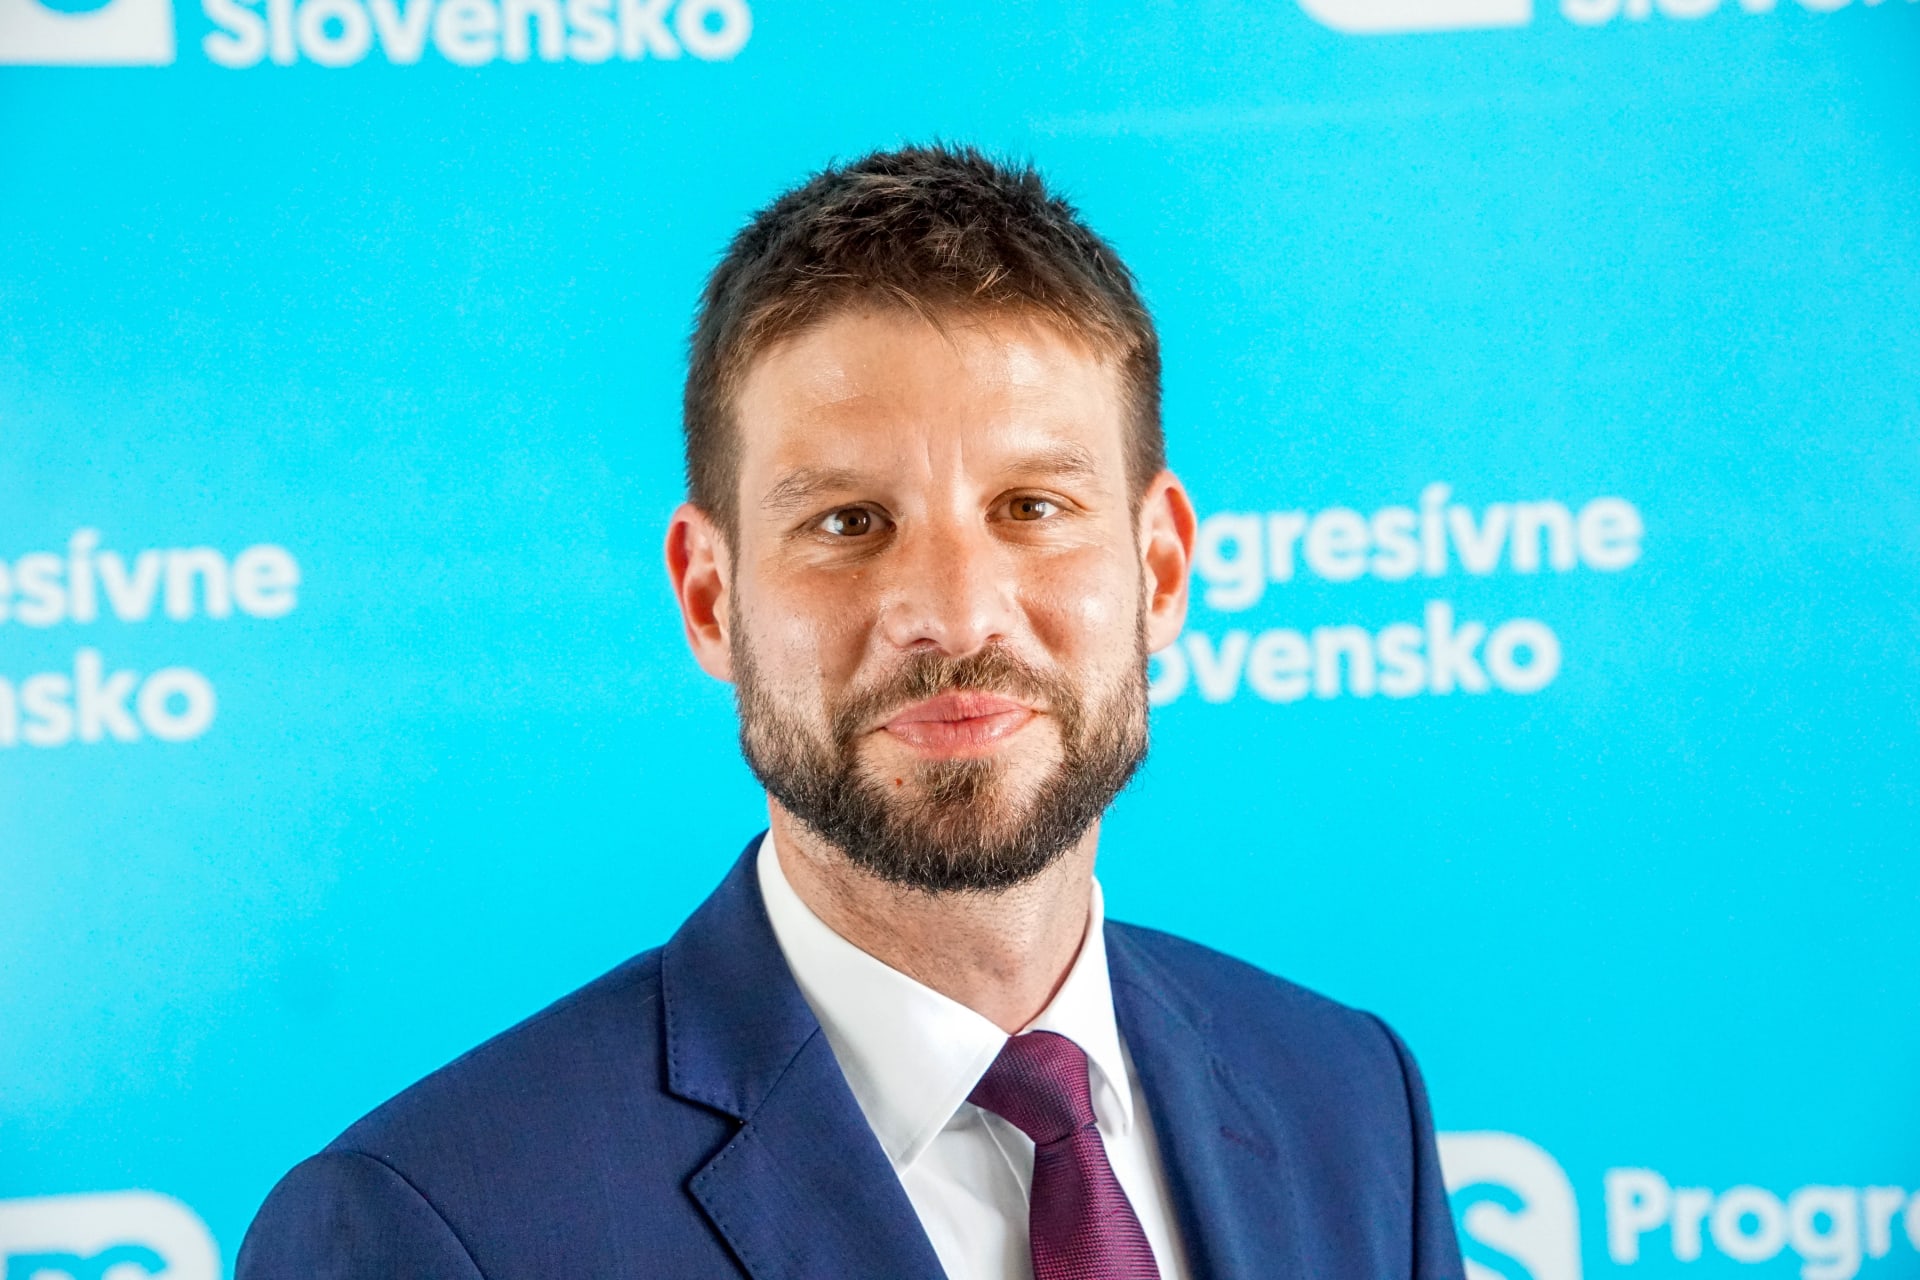 Šéf strany Progresivní Slovensko a místopředseda Evropského parlamentu Michal Šimečka